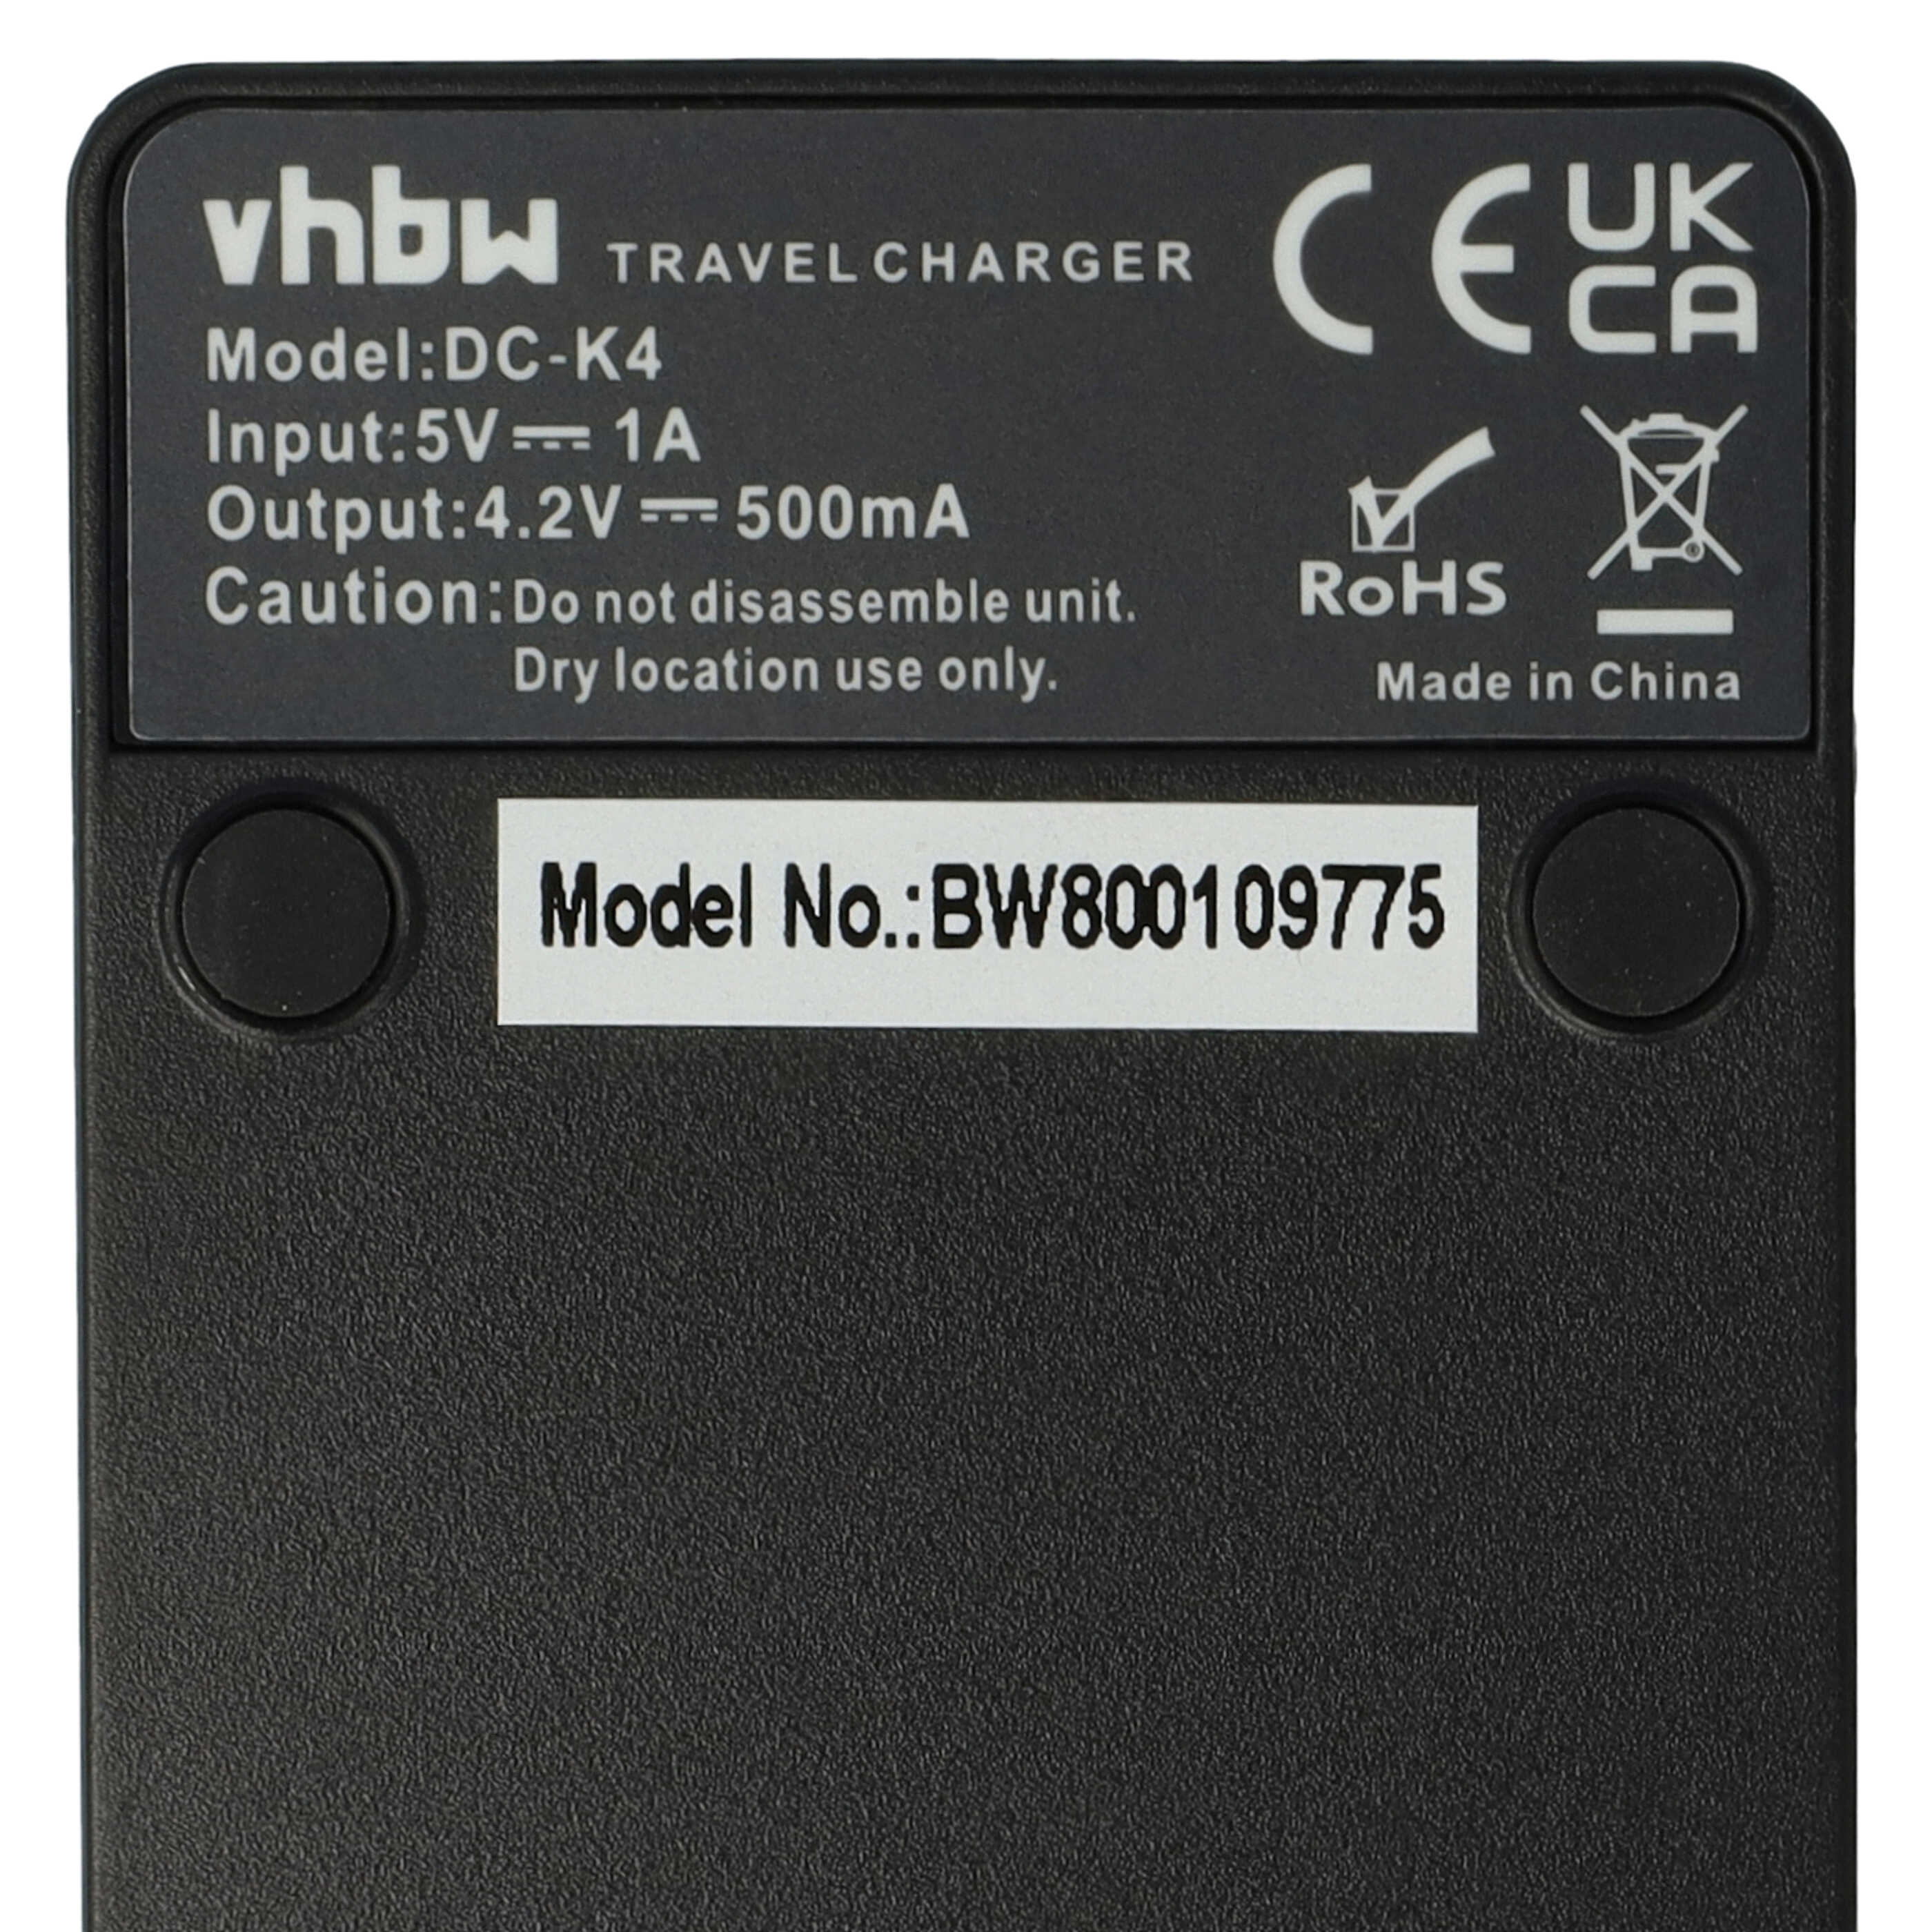 Battery Charger suitable for Nikon EN-EL5 Camera etc. - 0.5 A, 4.2 V